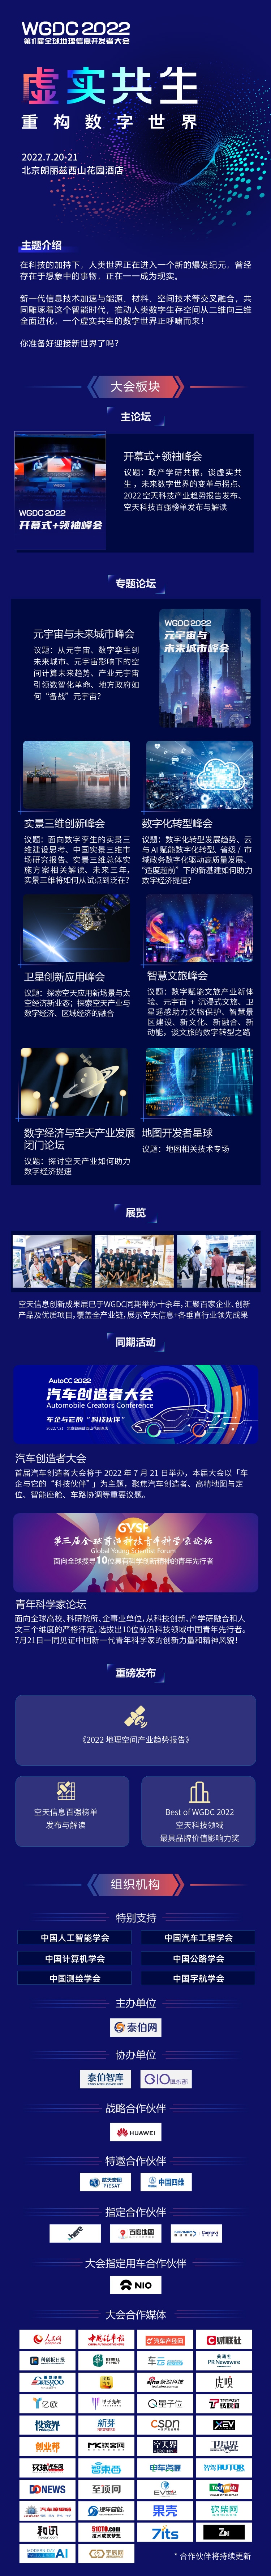 WGDC2022定于7月20-21日在北京召开！